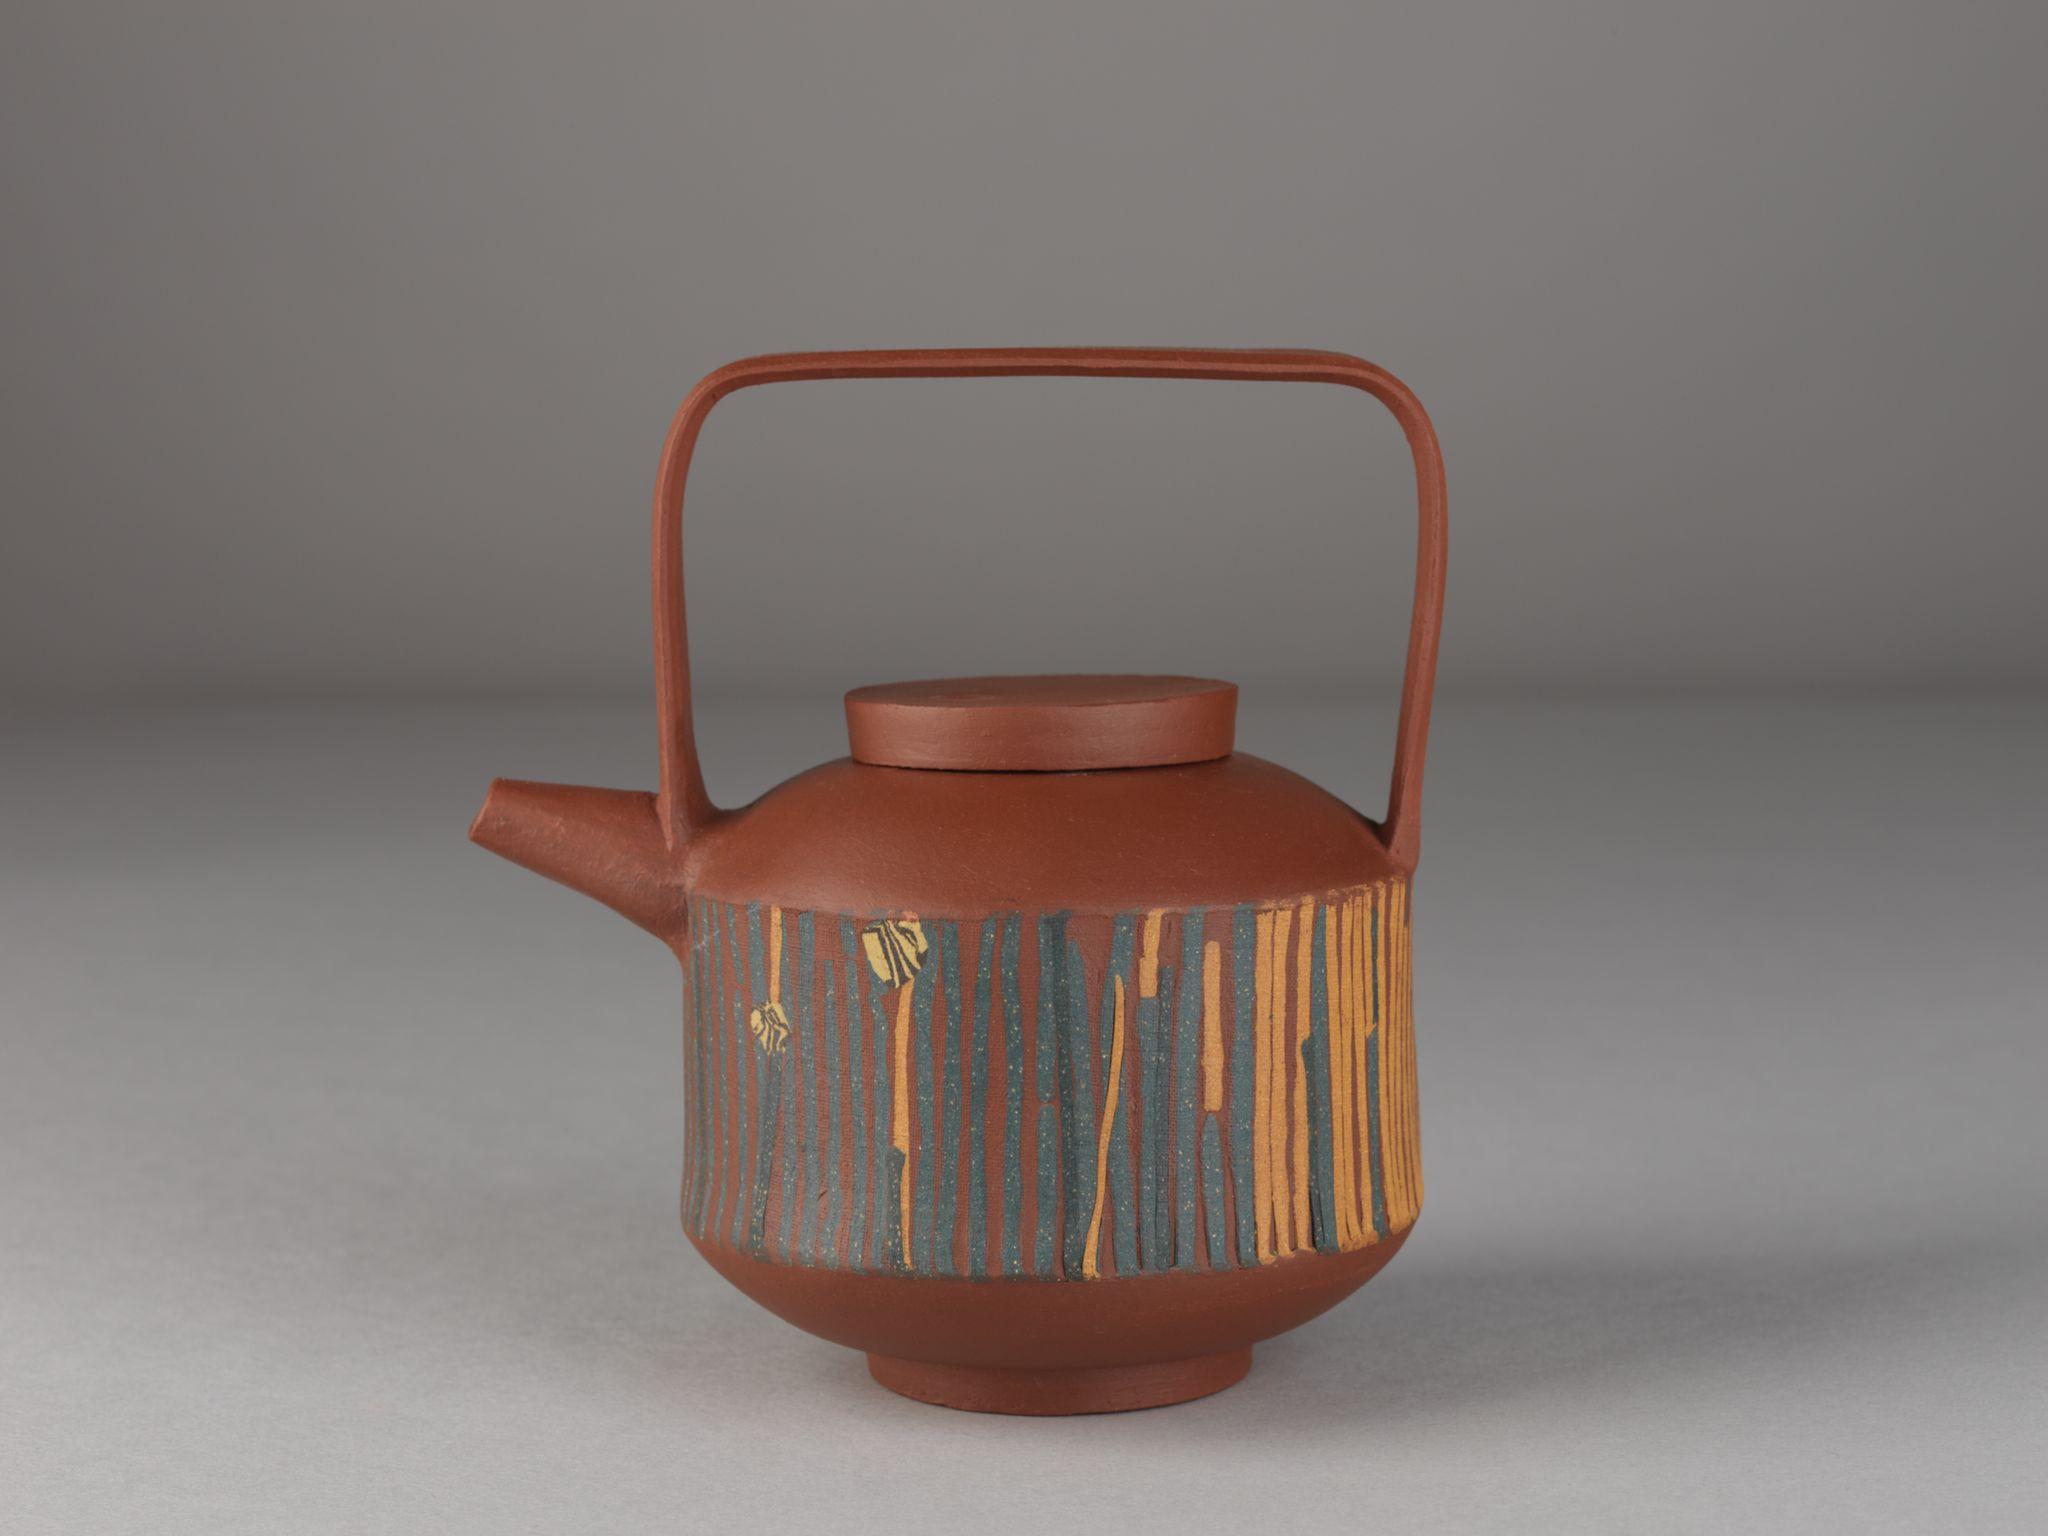 茶具文物館現正舉行「陶瓷茶具創作展覽2021」。圖示公開組亞軍得主阮斯盈的作品《彩砂》。